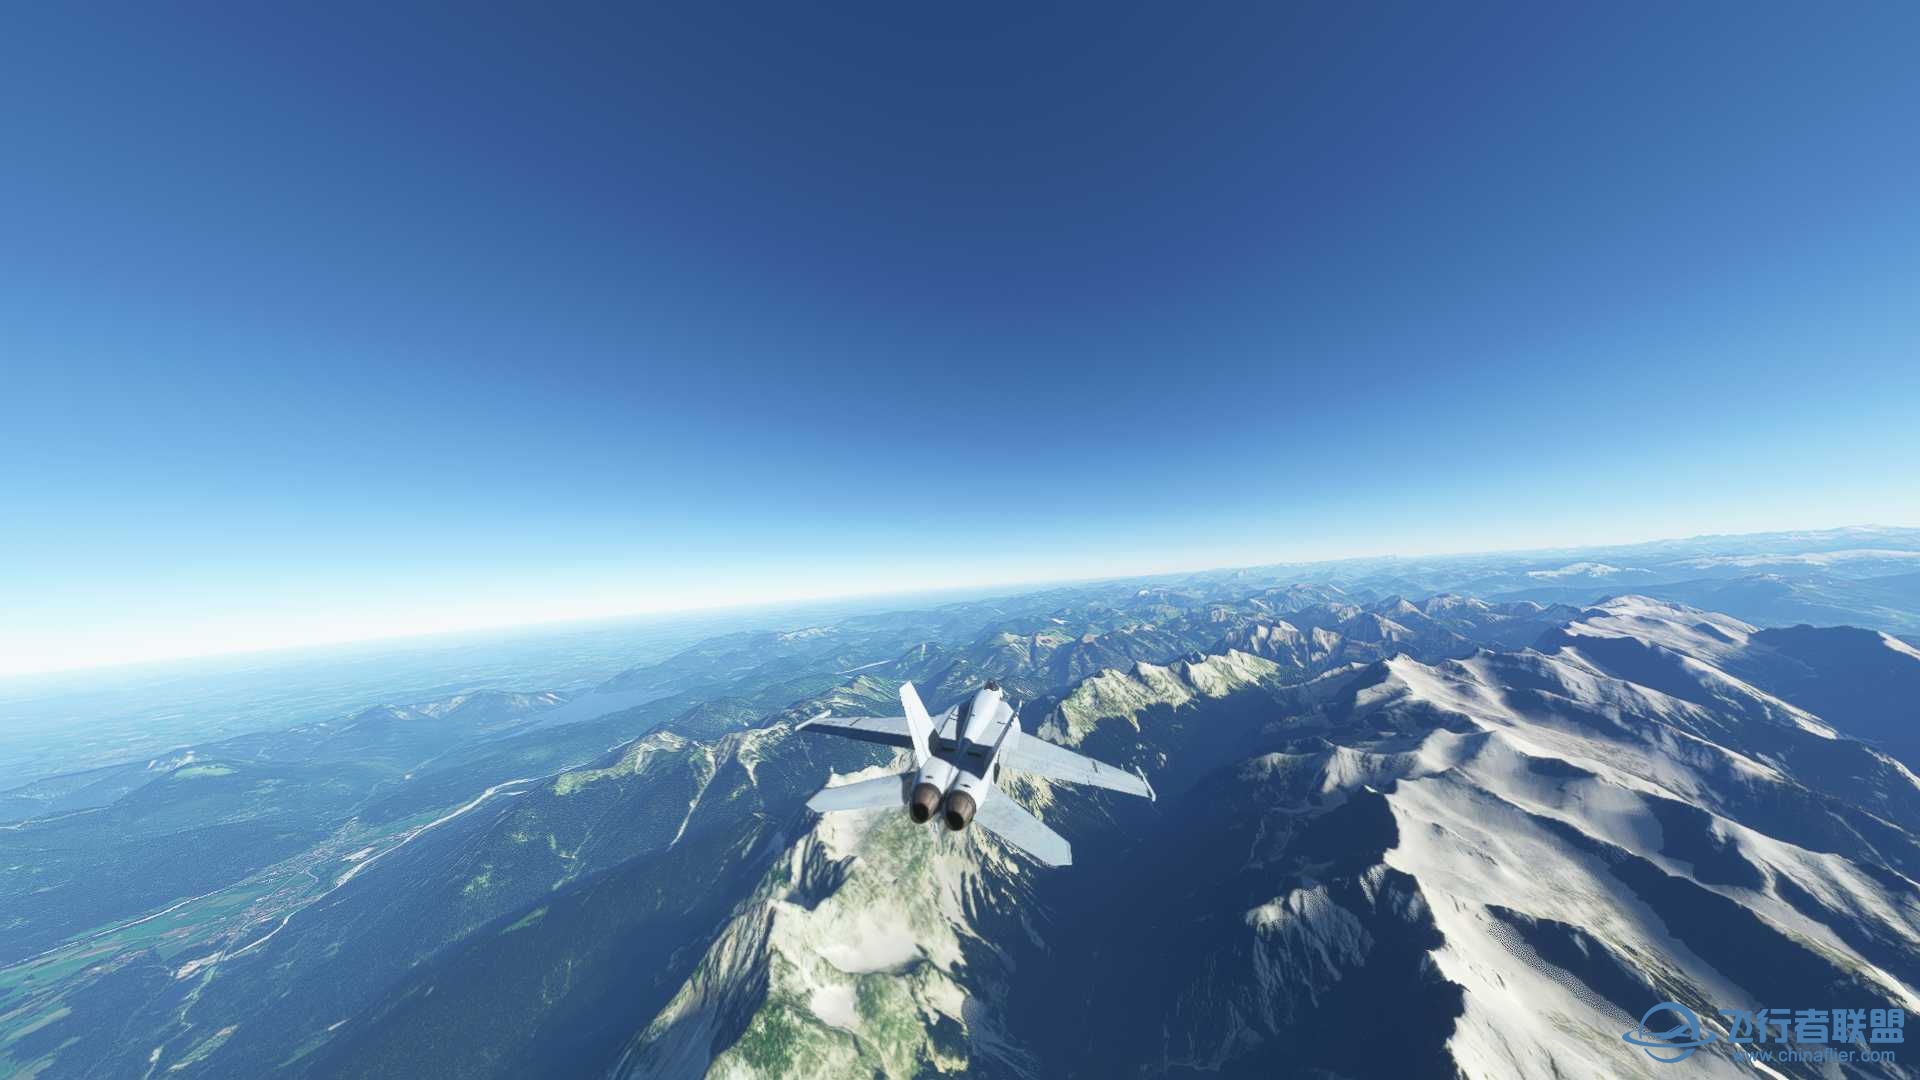 阿尔卑斯山脉附近飞行无法进行游戏-3195 